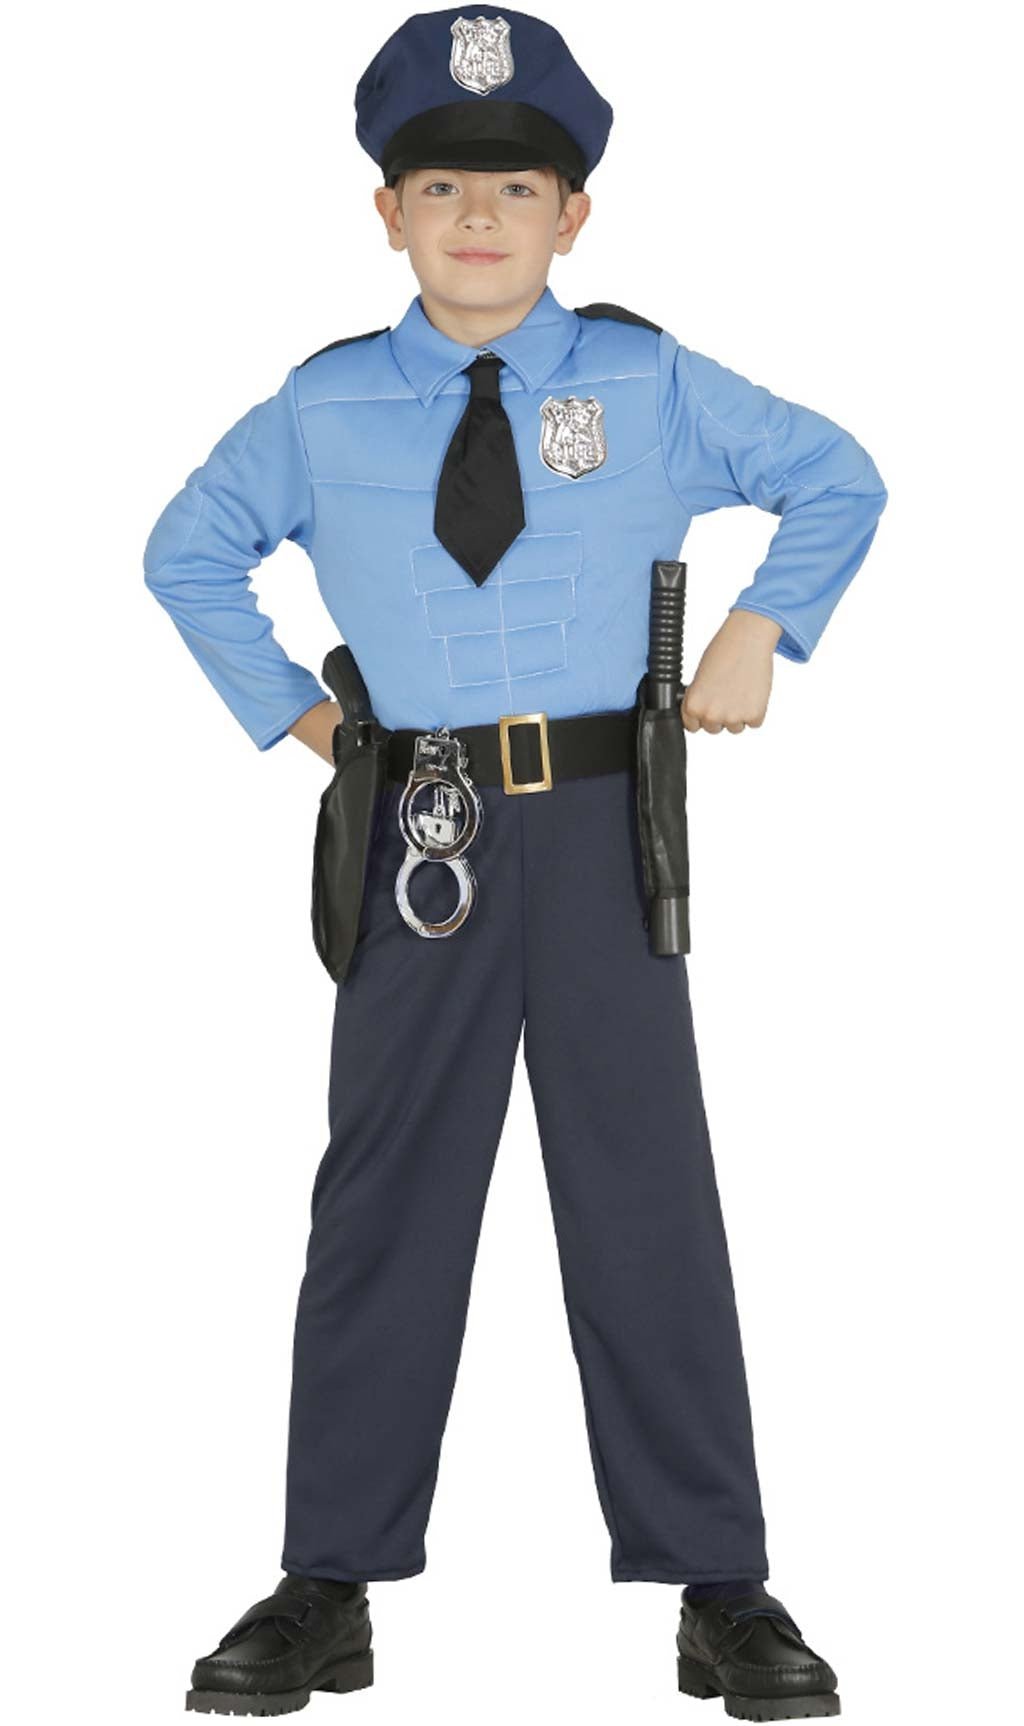 Disfraz de Policia infantil - Disfraces No solo fiesta